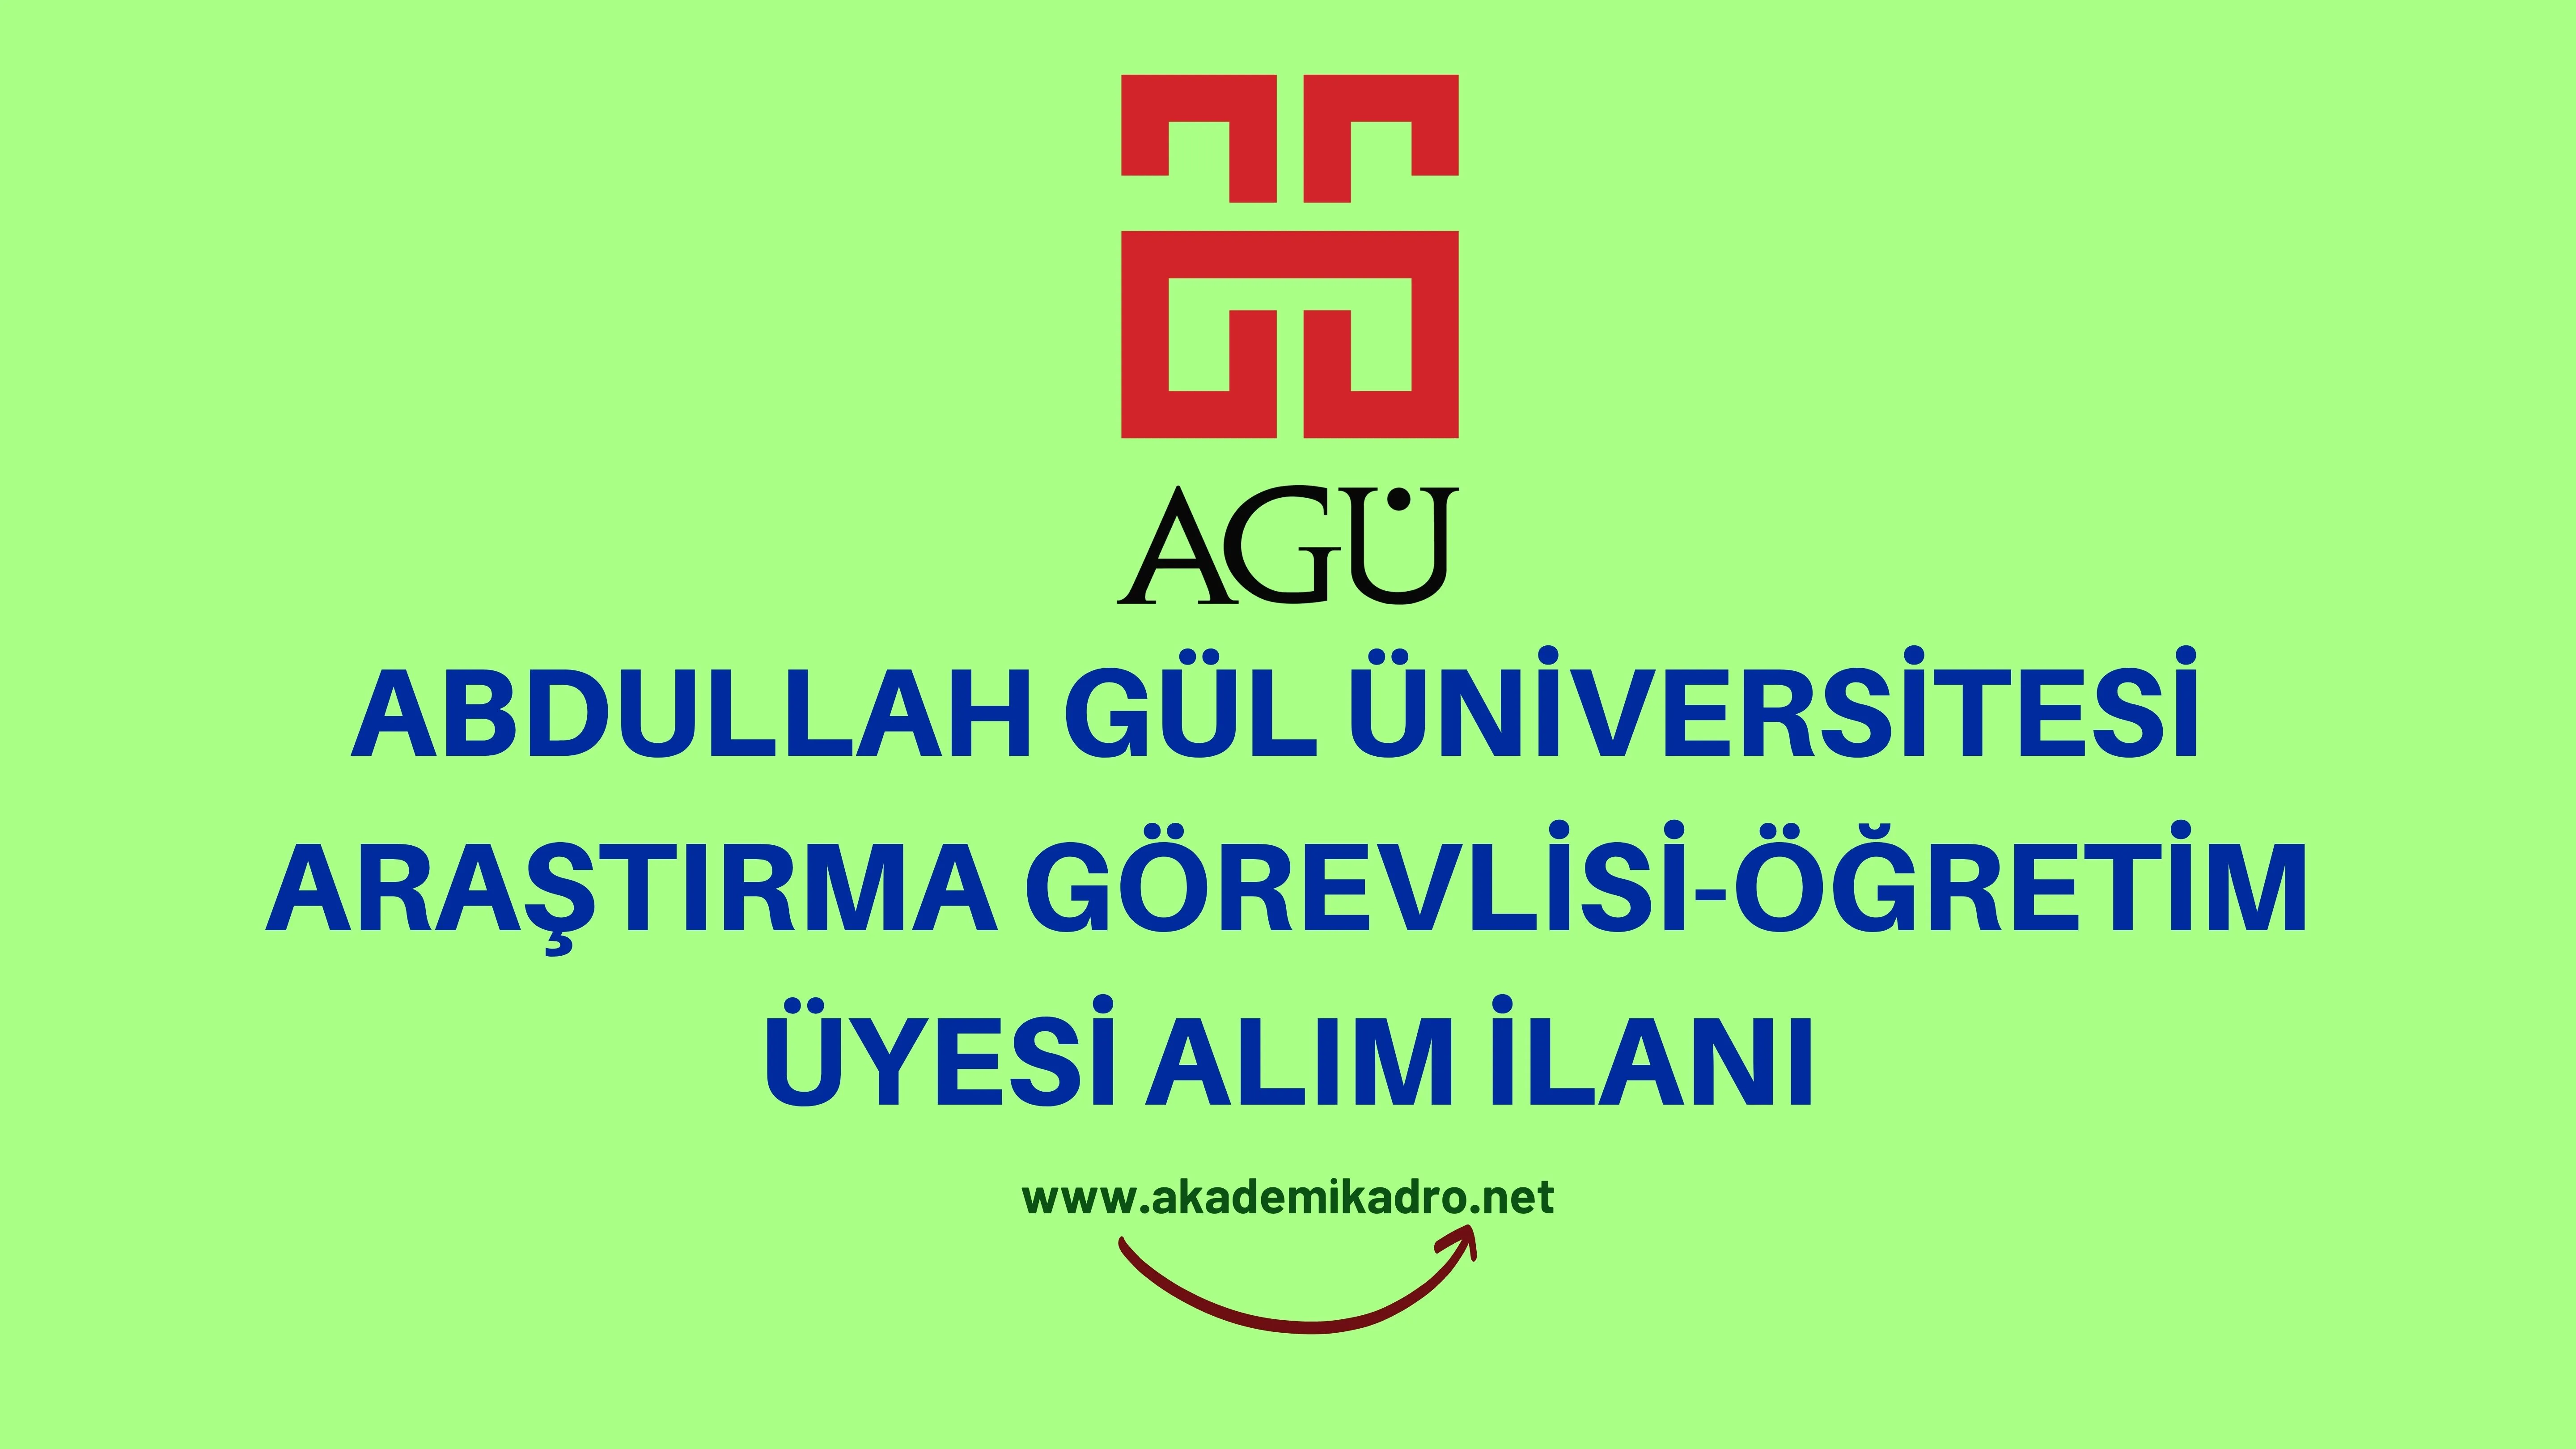 Abdullah Gül Üniversitesi Araştırma görevlisi ve öğretim üyesi alacak. Son başvuru tarihi 22 Haziran 2023.